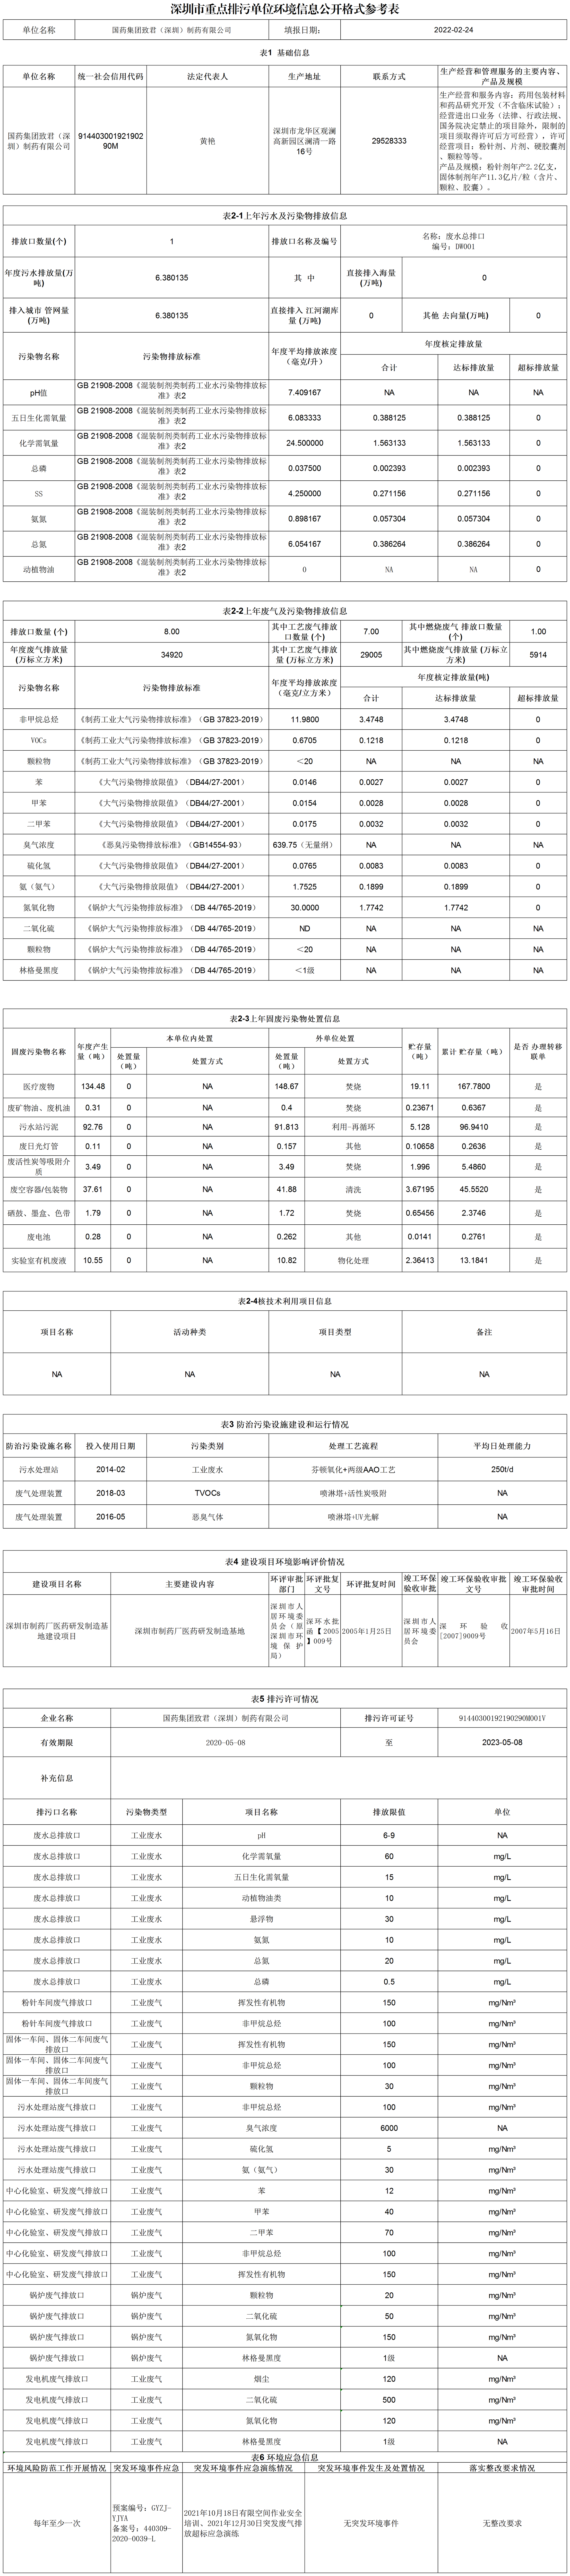 附件1：深圳市重点排污单位环境信息公开格式参考表(20220309)_A2L108.png